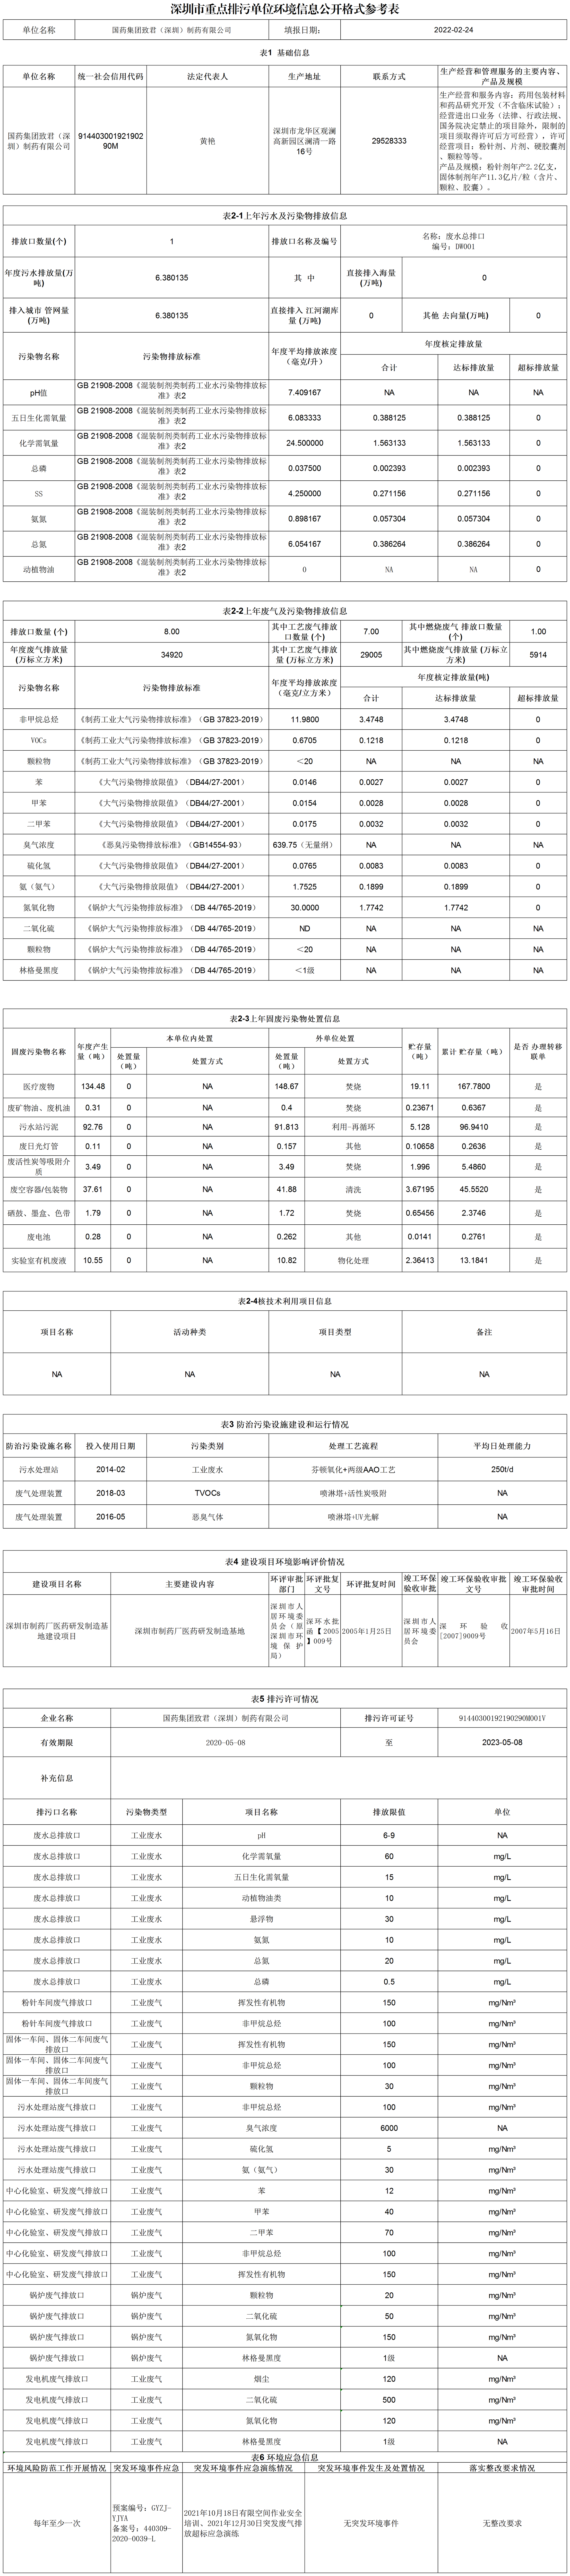 附件1：深圳市重点排污单位环境信息公开格式参考表(20220309)_A2L108.png